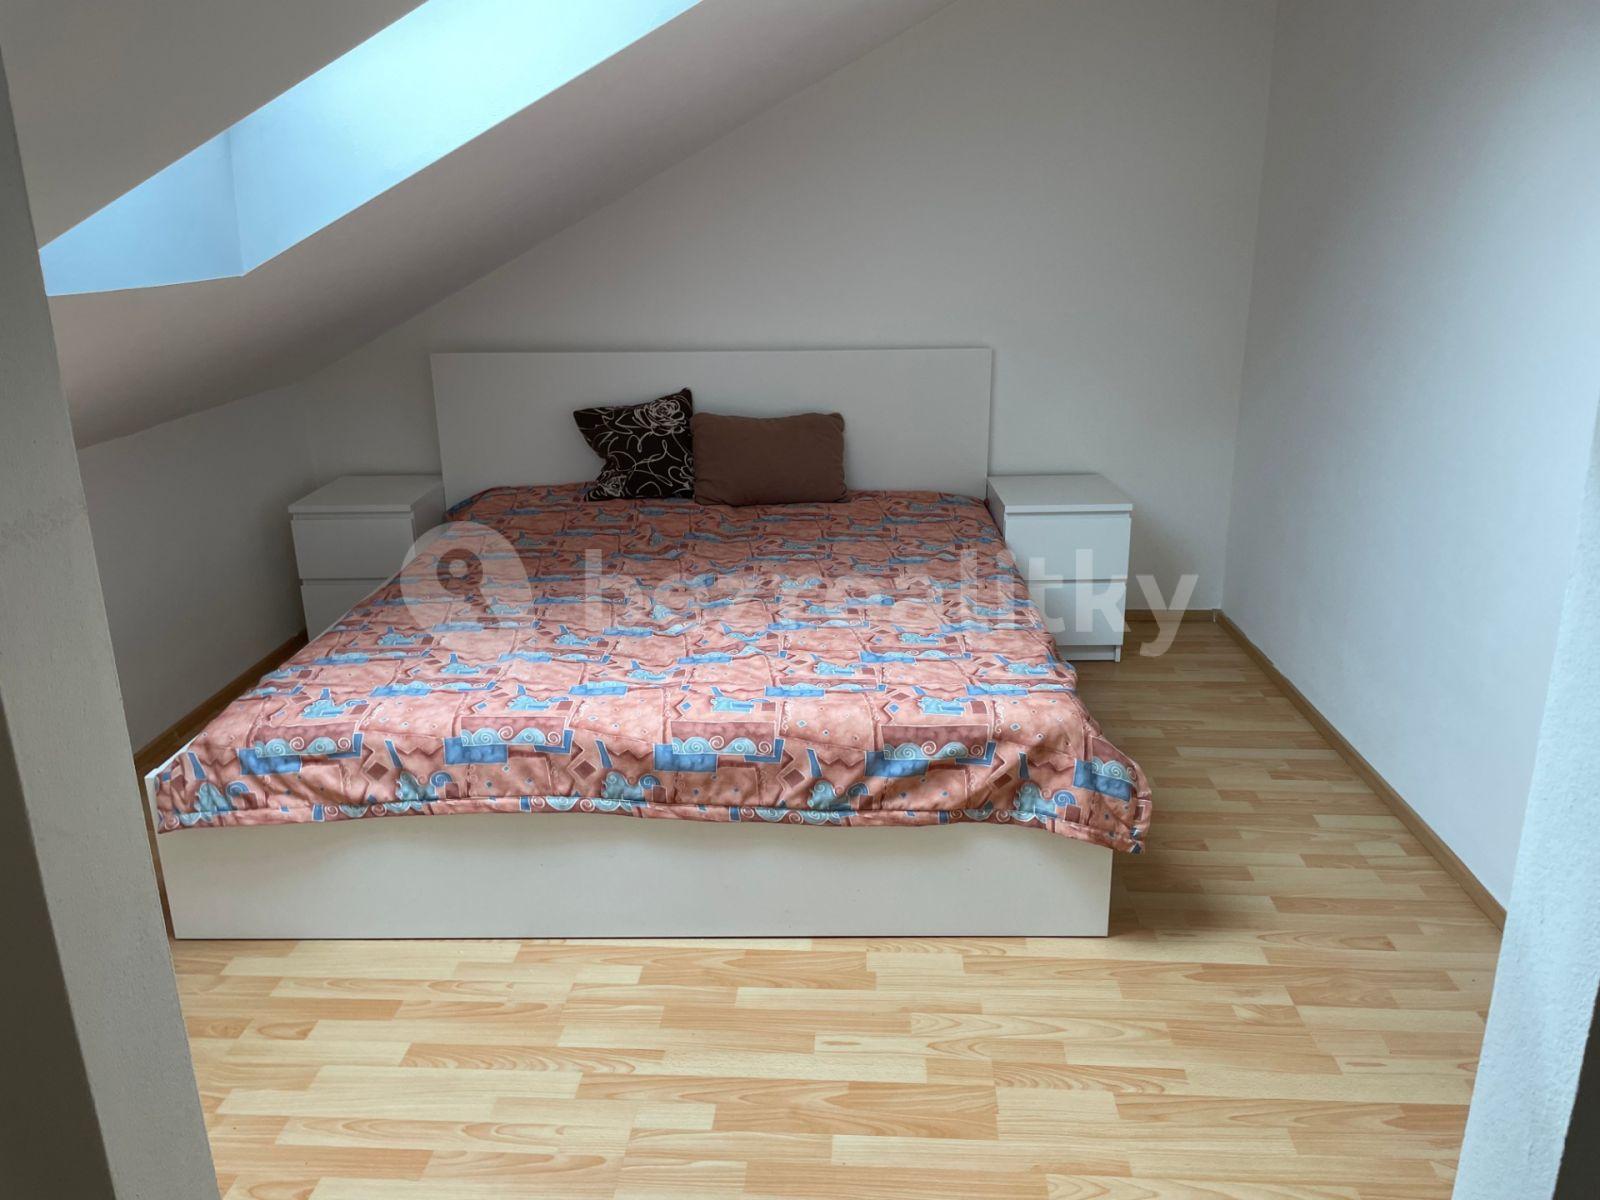 1 bedroom with open-plan kitchen flat for sale, 68 m², Bráfova tř., Třebíč, Vysočina Region